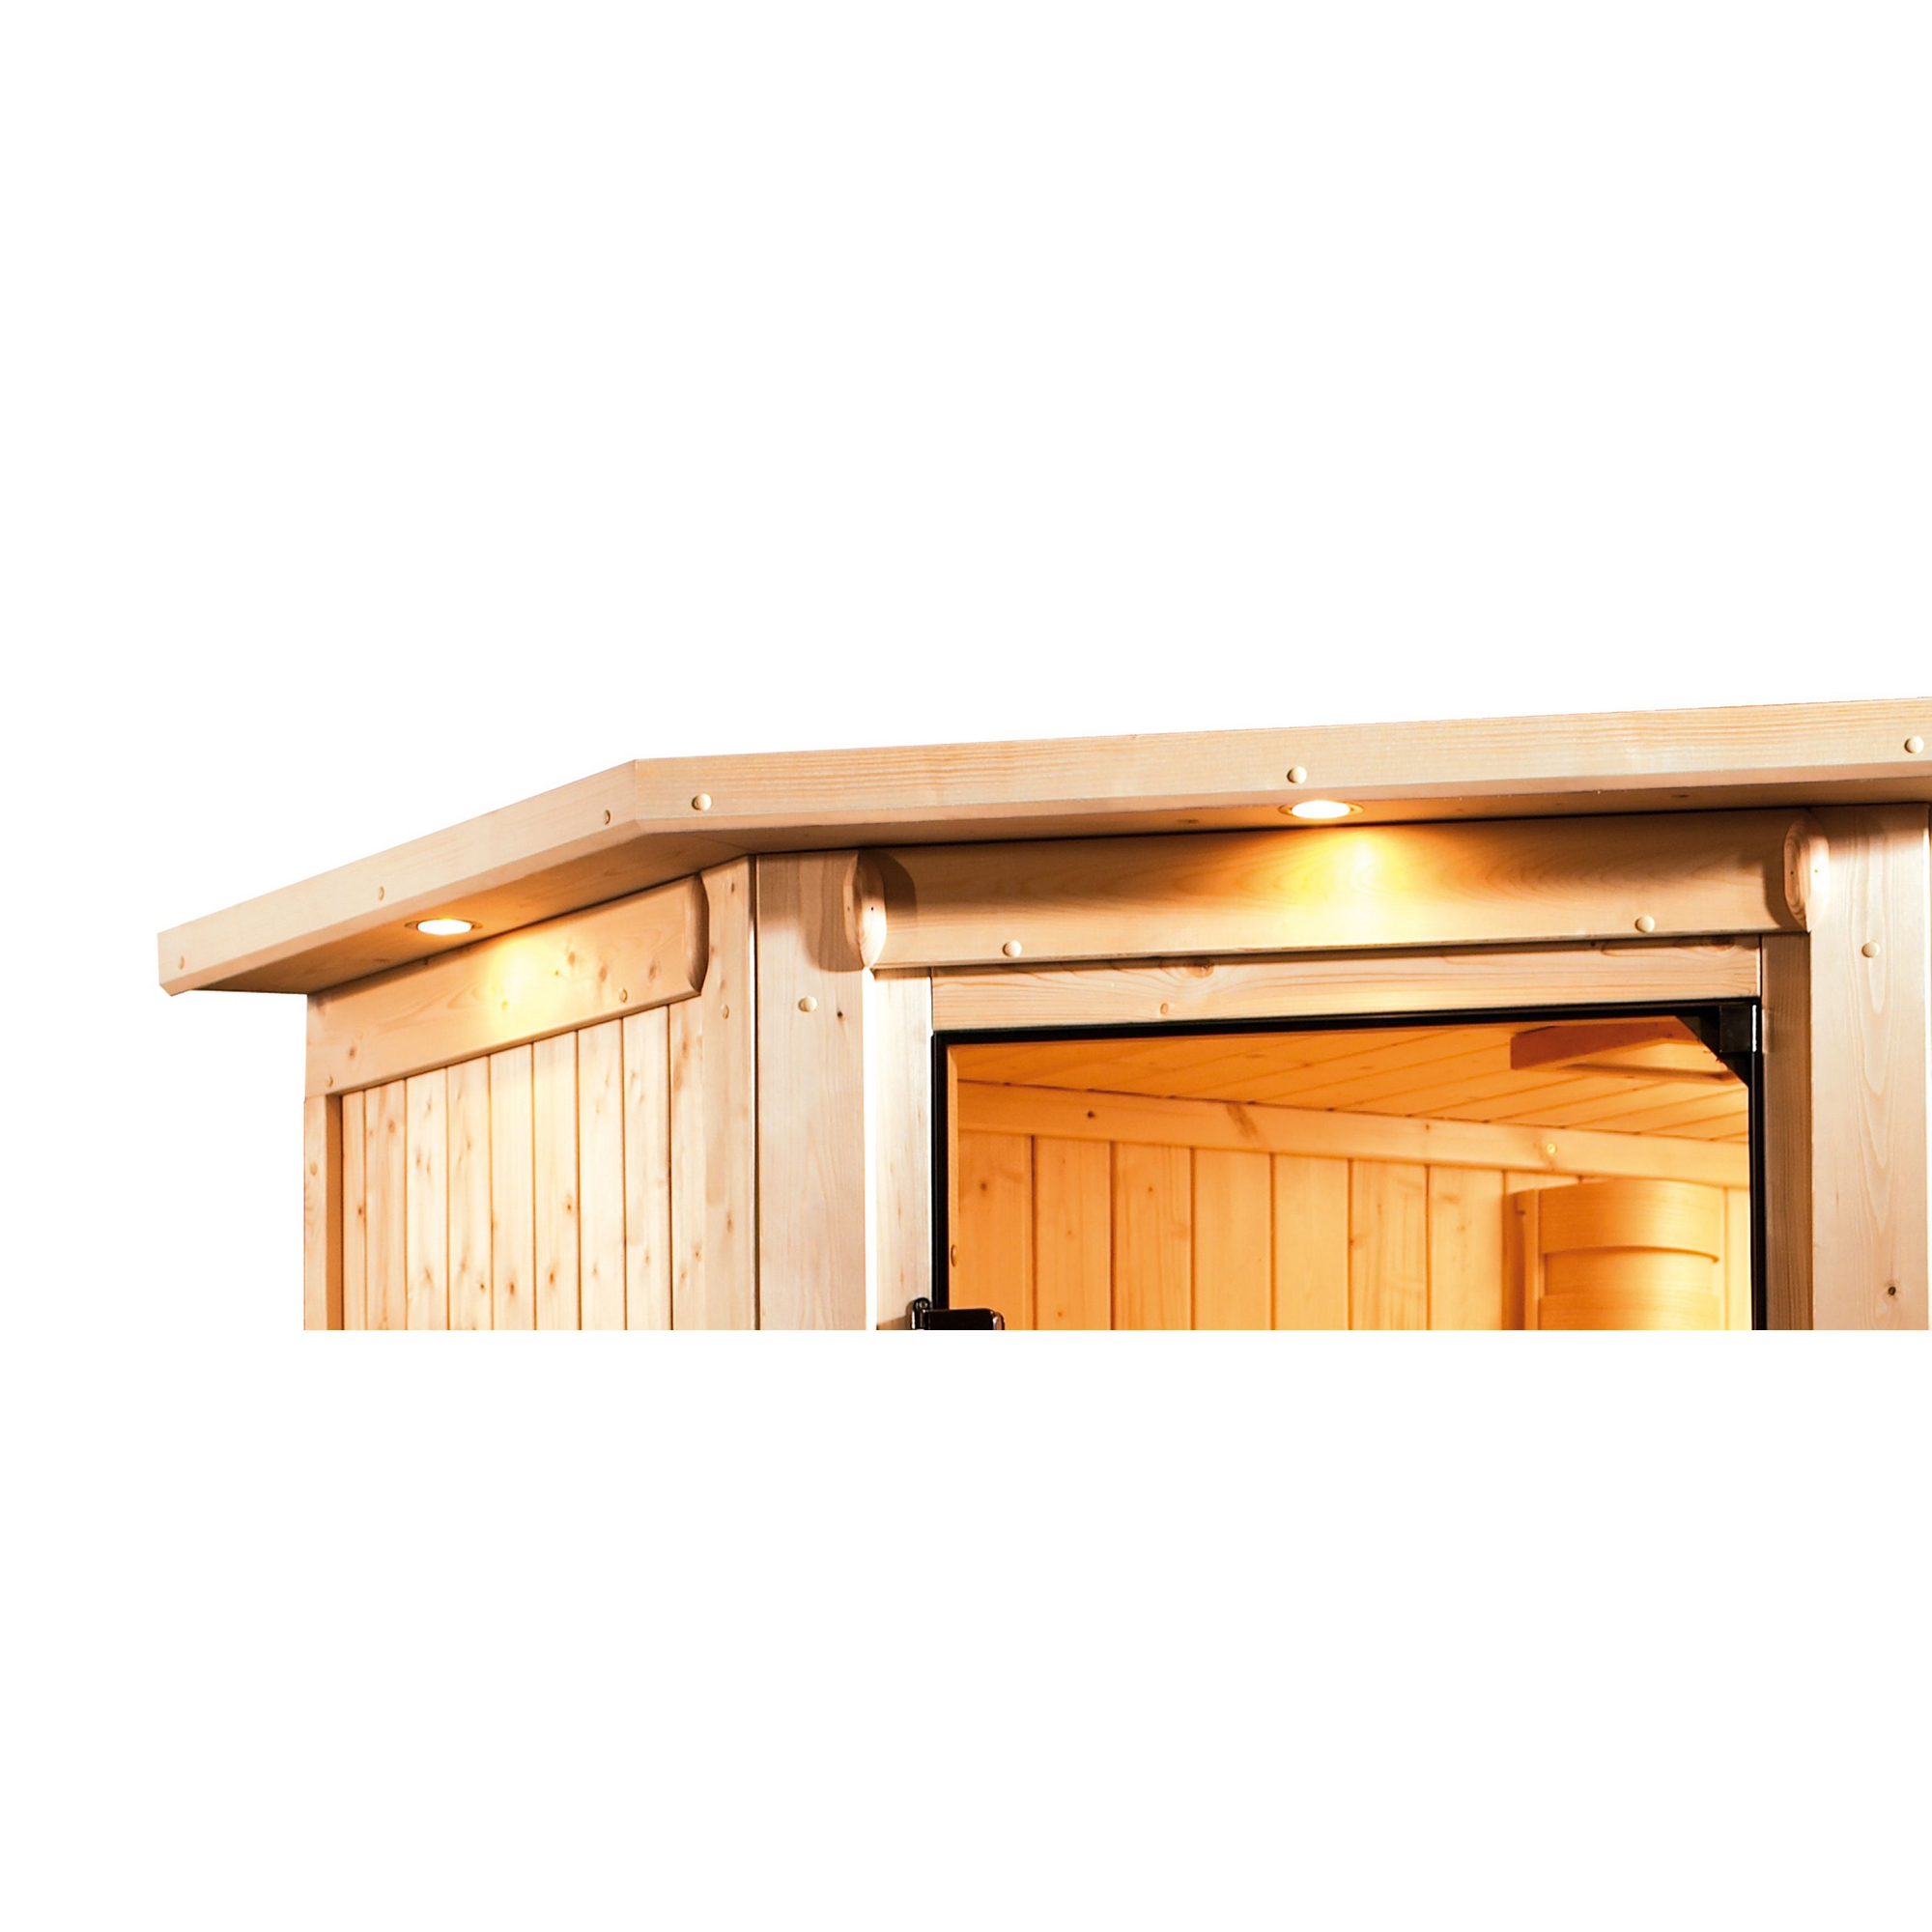 Elementsauna 'Carolina' naturbelassen mit Kranz und bronzierter Tür 3,6 kW Ofen integrierte Steuerung 210 x 184 x 202 cm + product picture